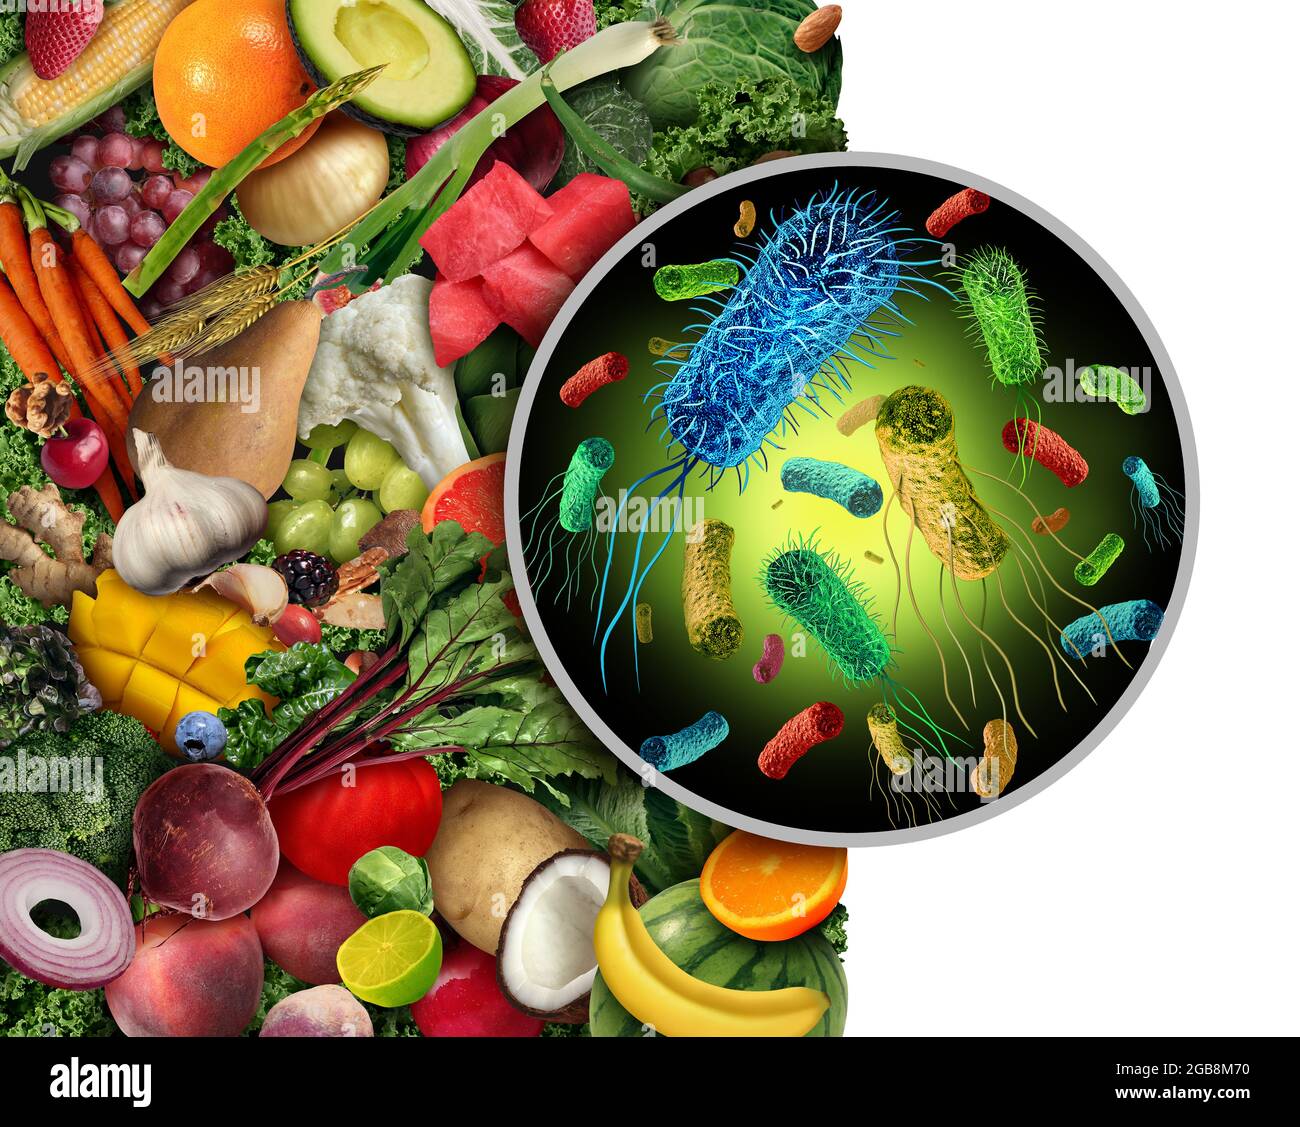 Kontaminiertes Obst und Gemüse als infektiöse Bakterien und ansteckende Keime wie Salmonella Listeria auf produzieren und essen bakterielle Kontaminanten. Stockfoto